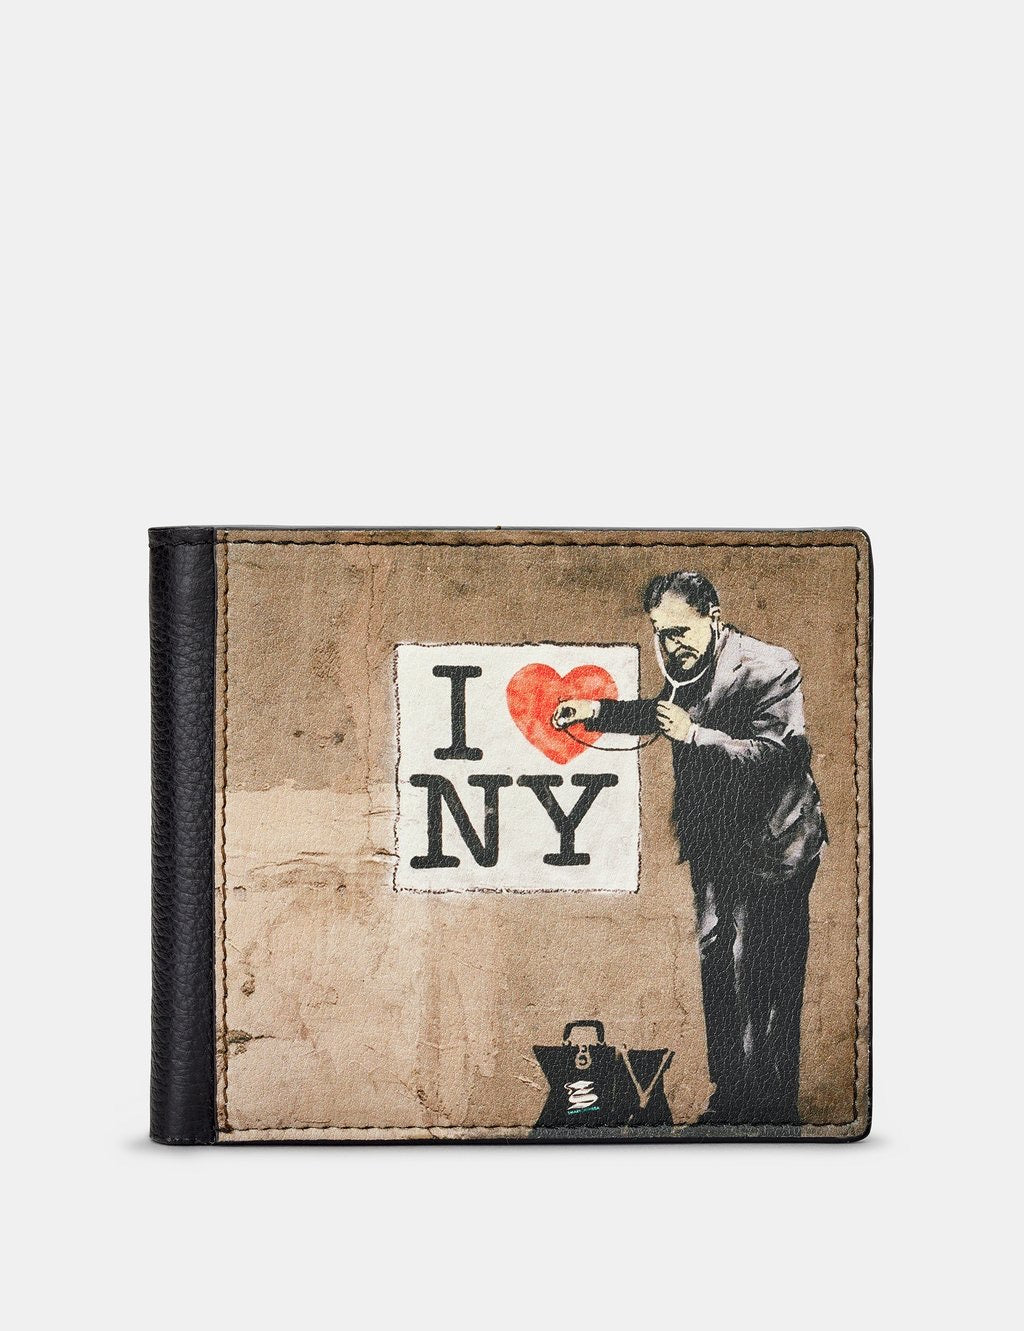 Yoshi Leather Banksy NY Black Leather Wallet*